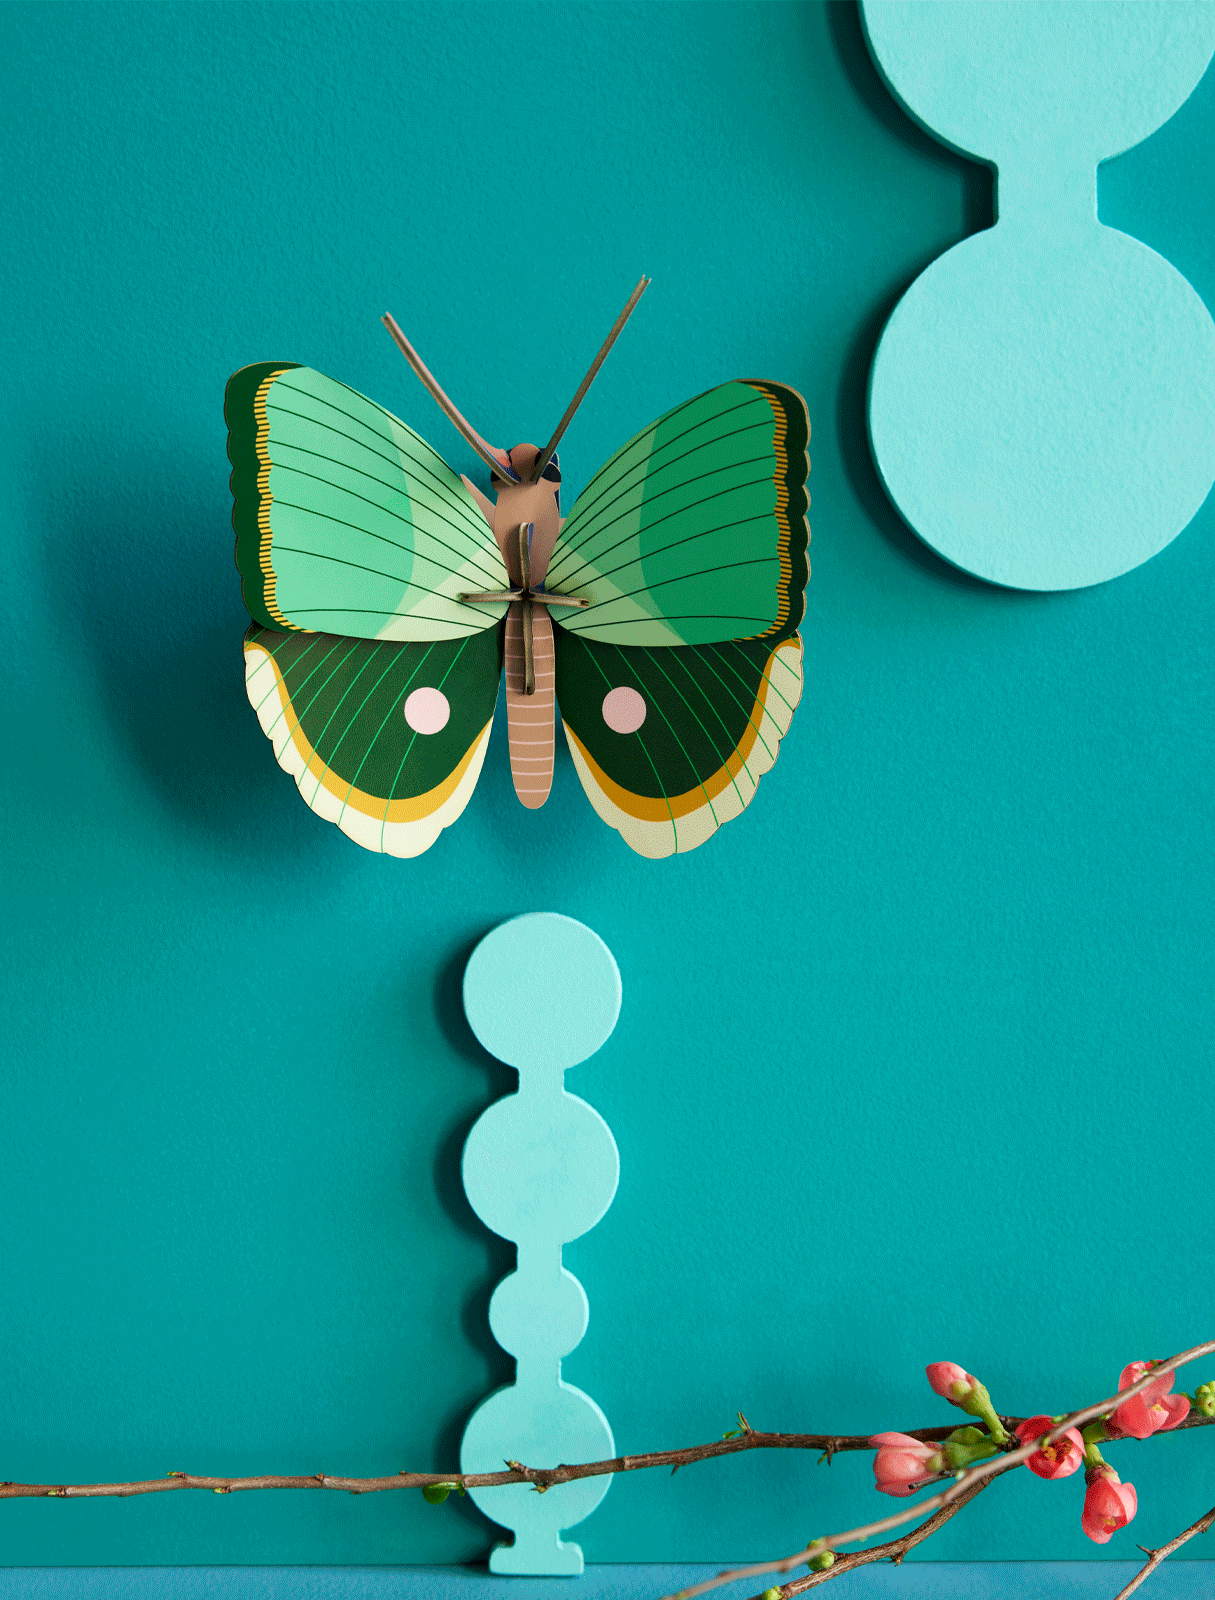 Závěsná papírová dekorace na zeď zelený tropický motýl s proužky od značky Studio ROOF